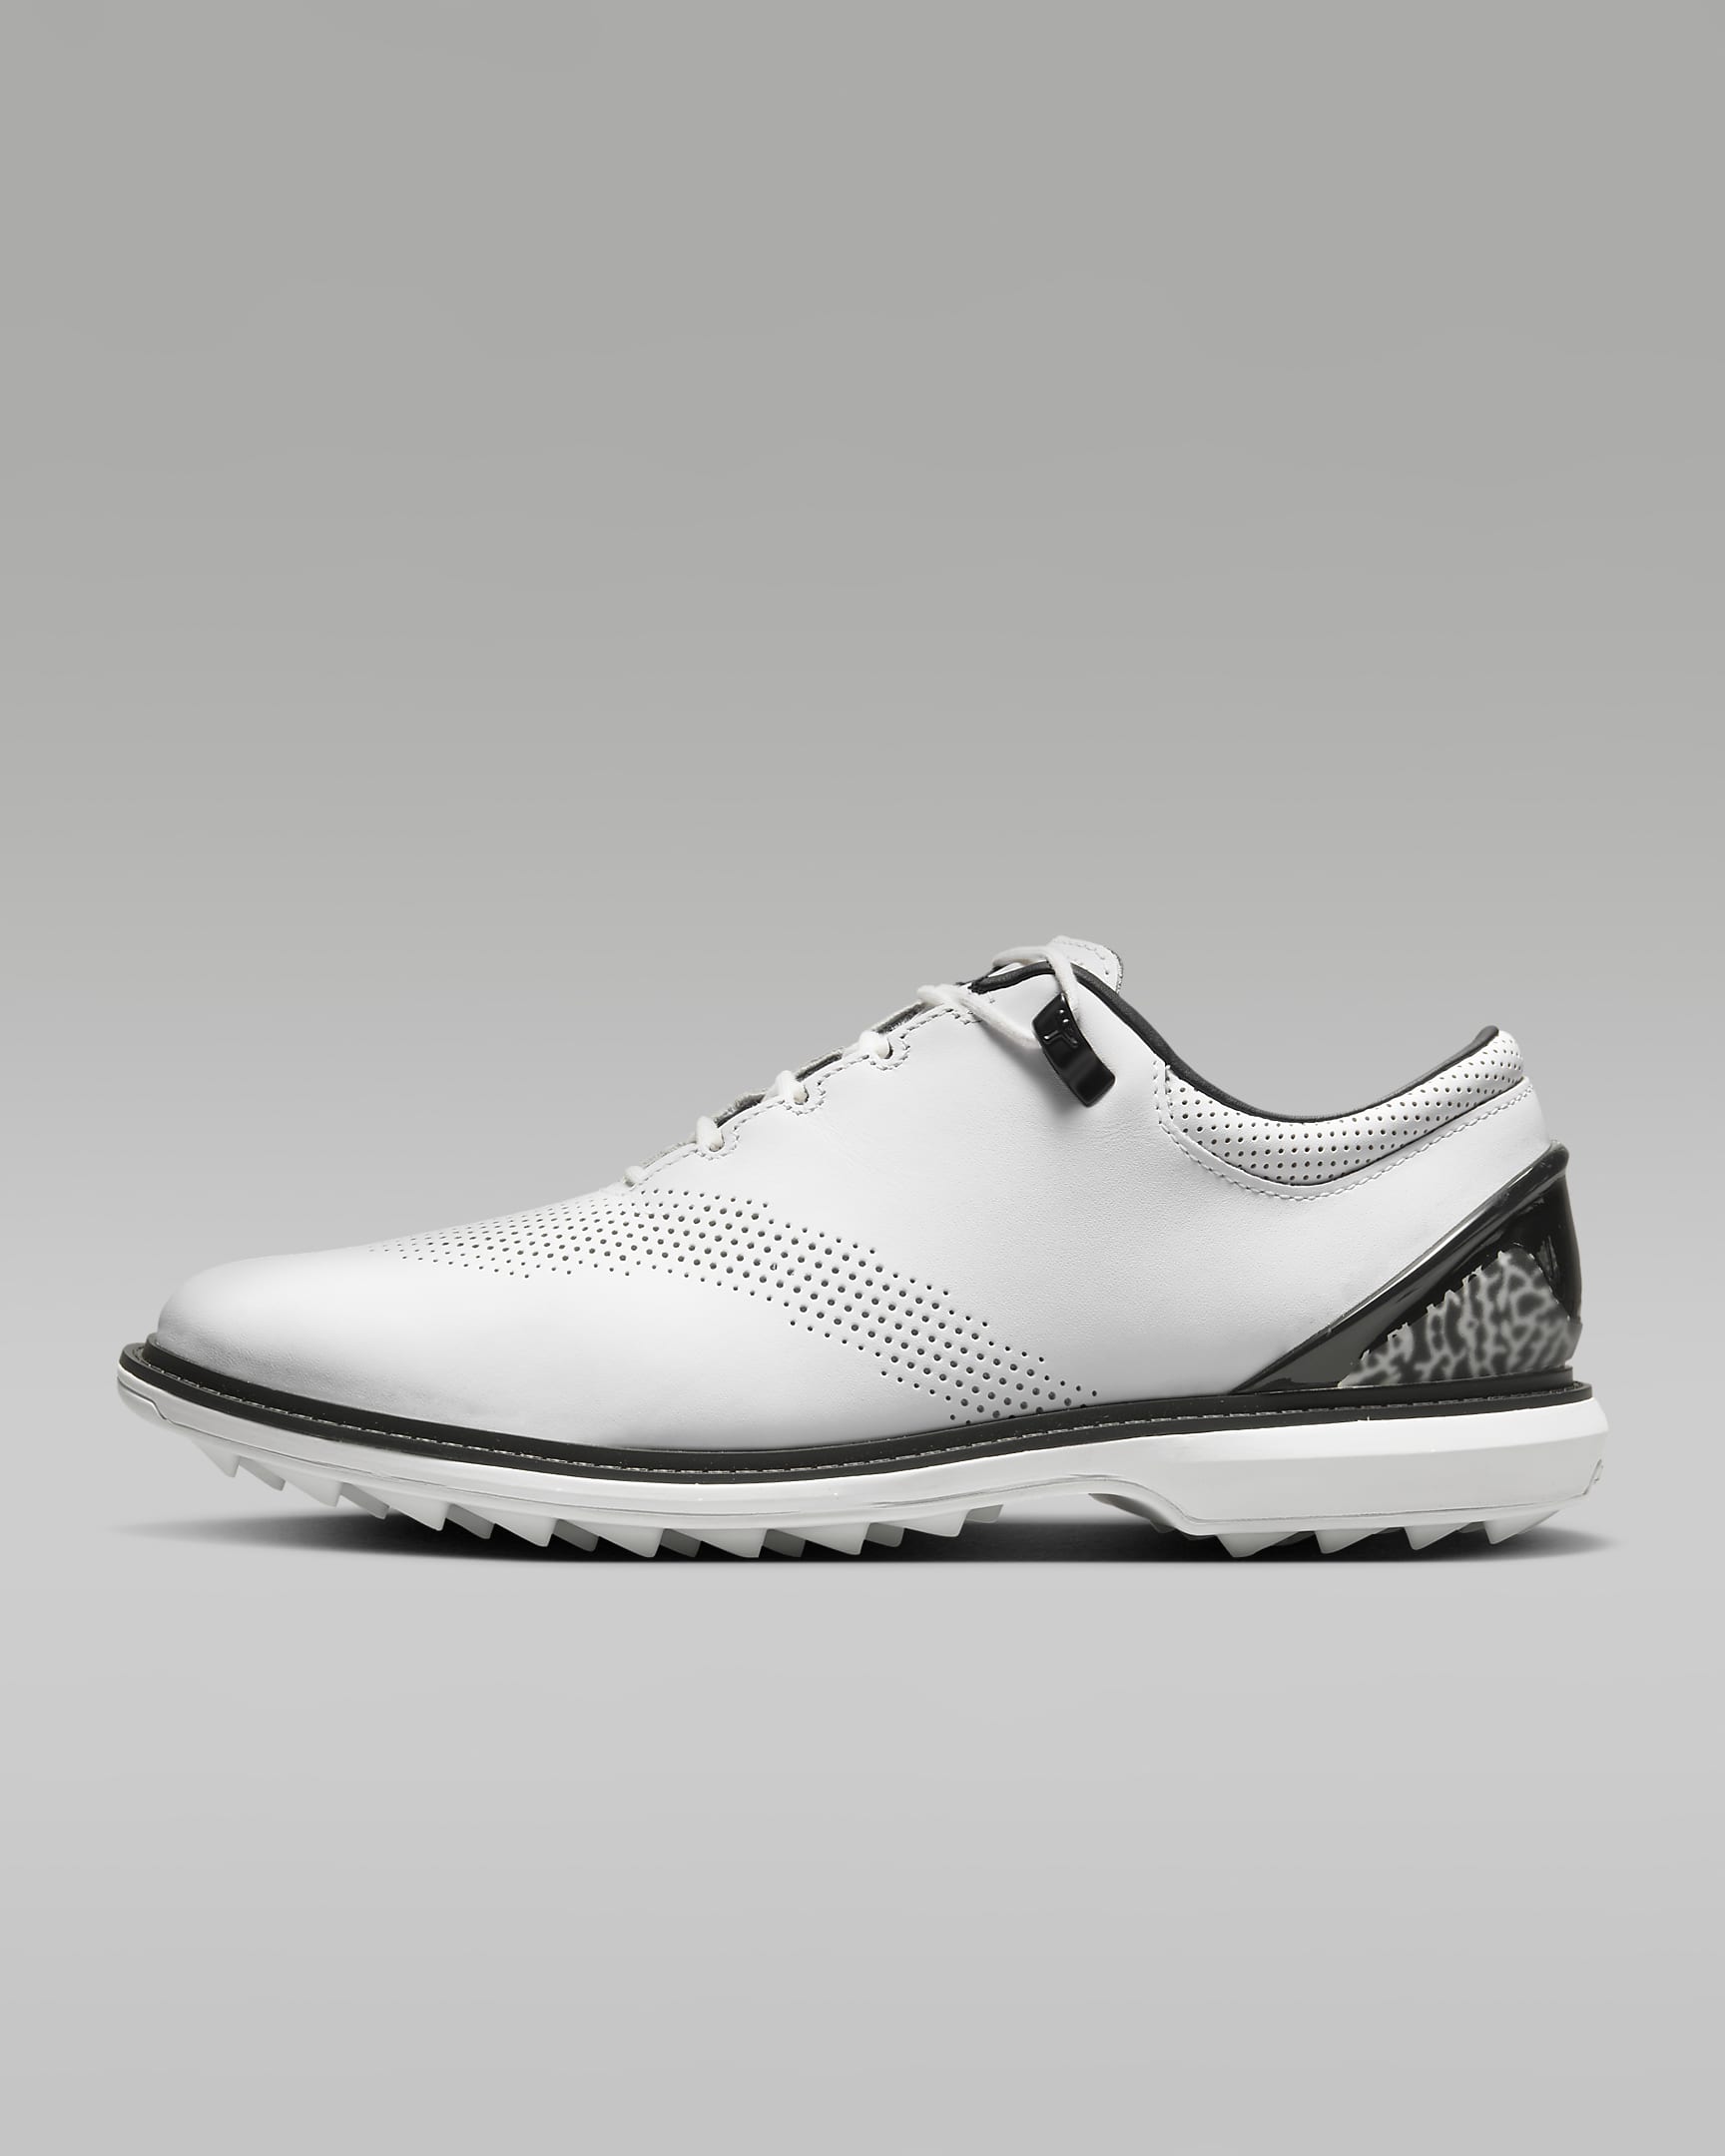 Jordan ADG 4 Men's Golf Shoes - White/Black/White